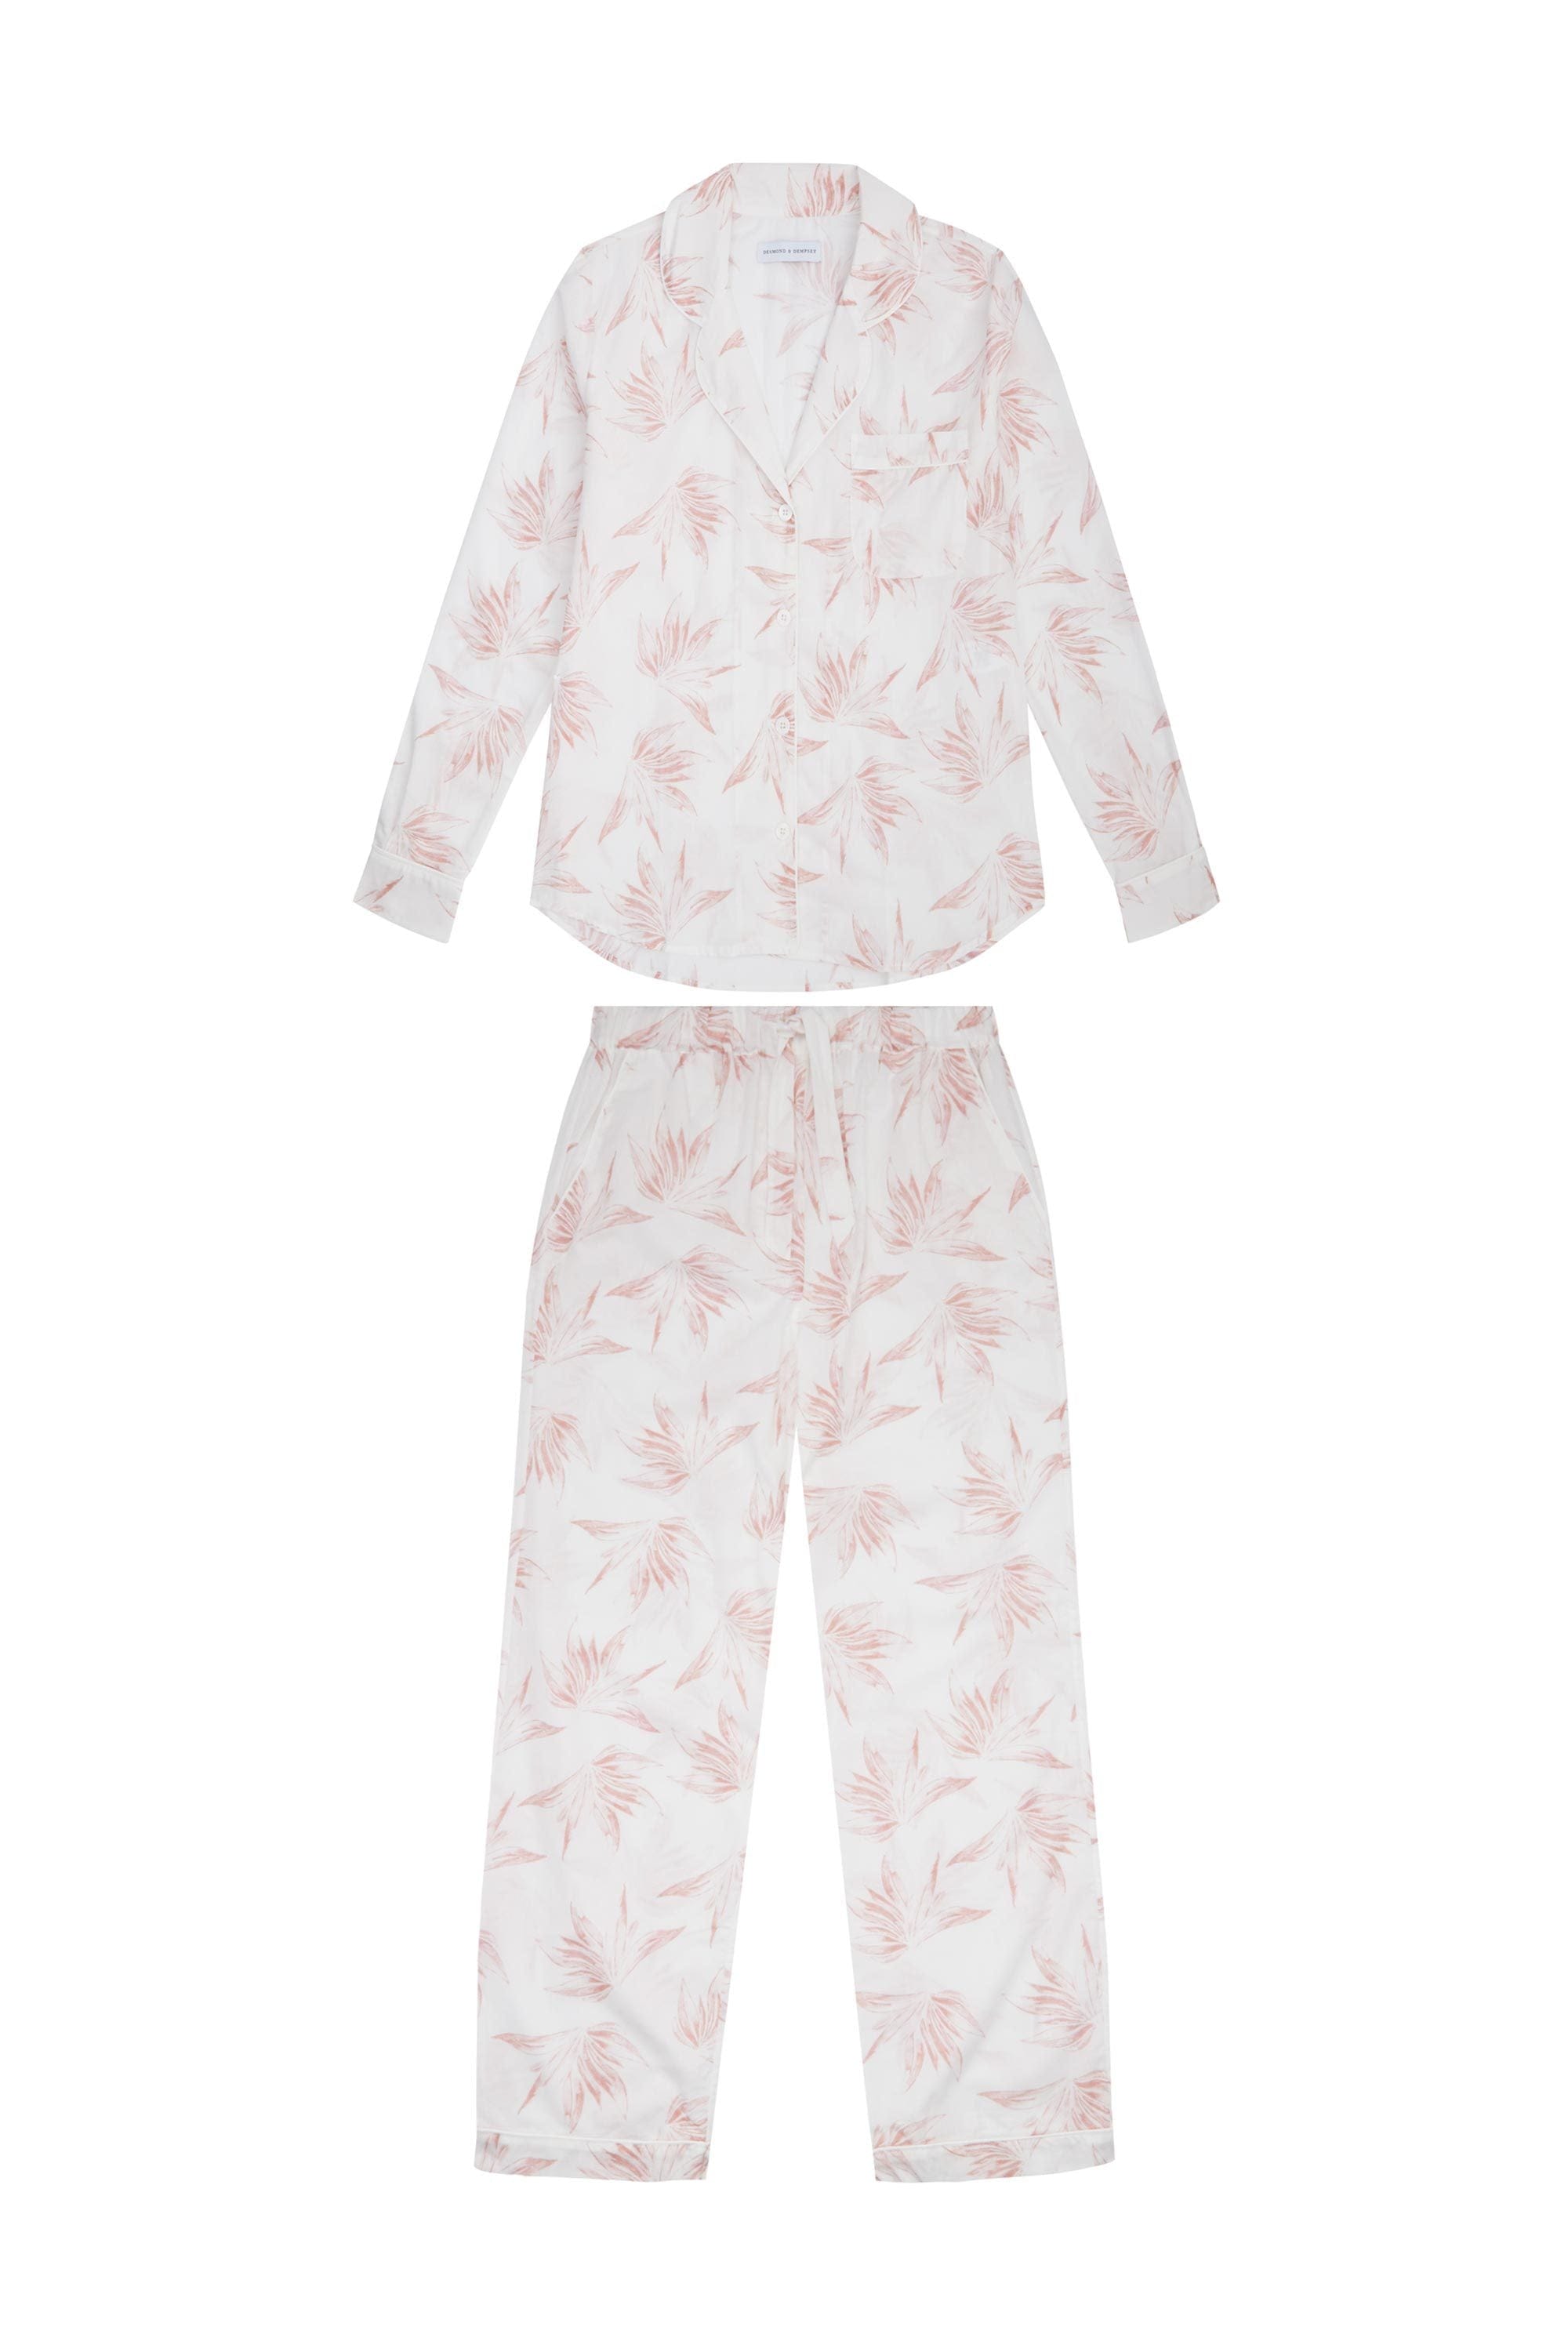 Long Pyjama Set Deia Print White/Pink | Desmond & Dempsey